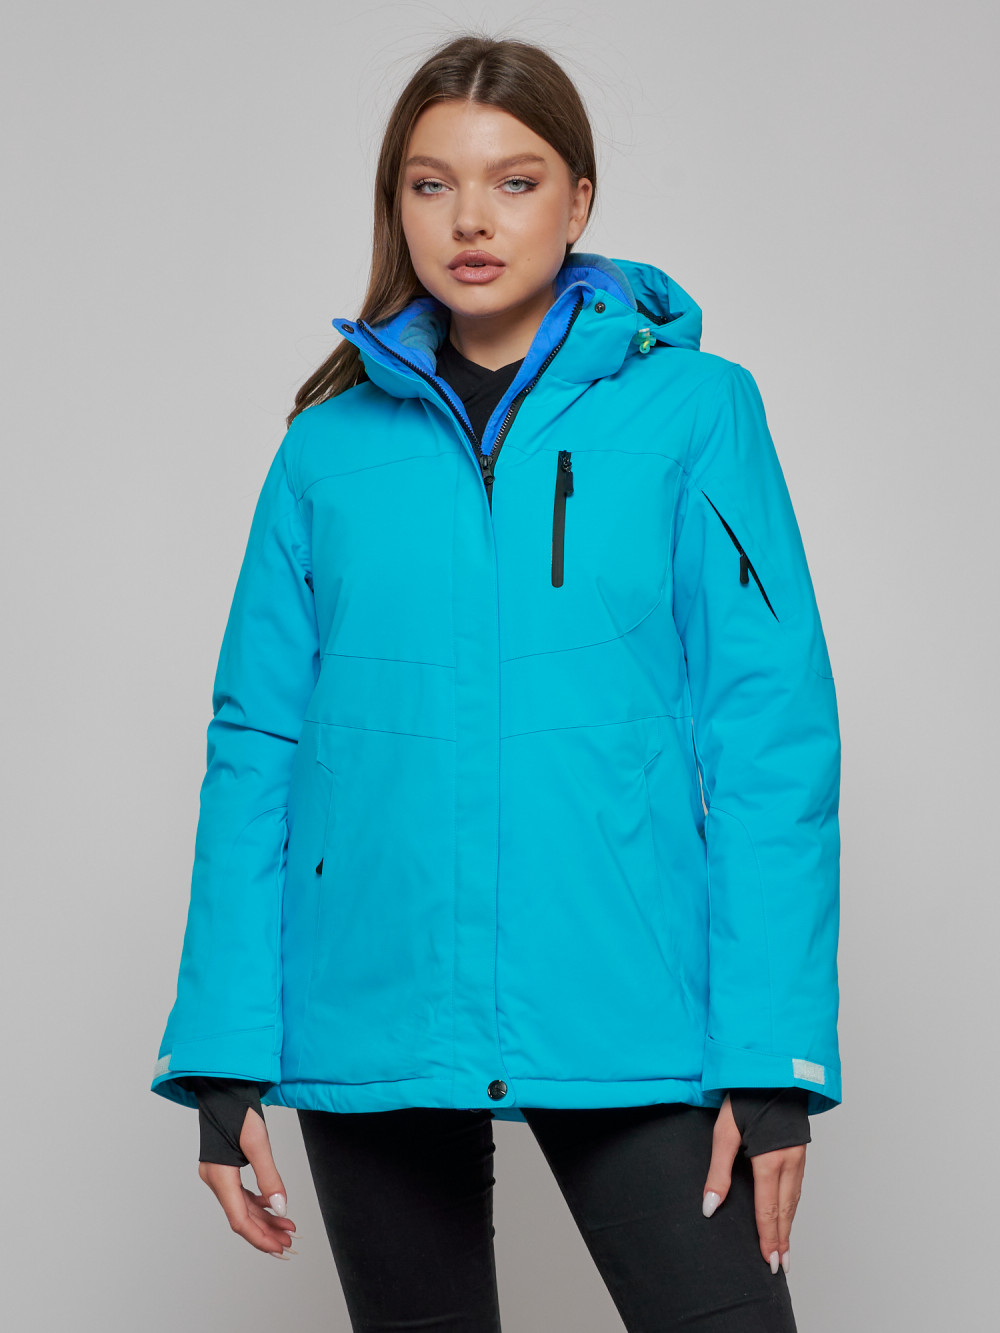 Купить оптом Горнолыжная куртка женская зимняя синего цвета 05S в Екатеринбурге